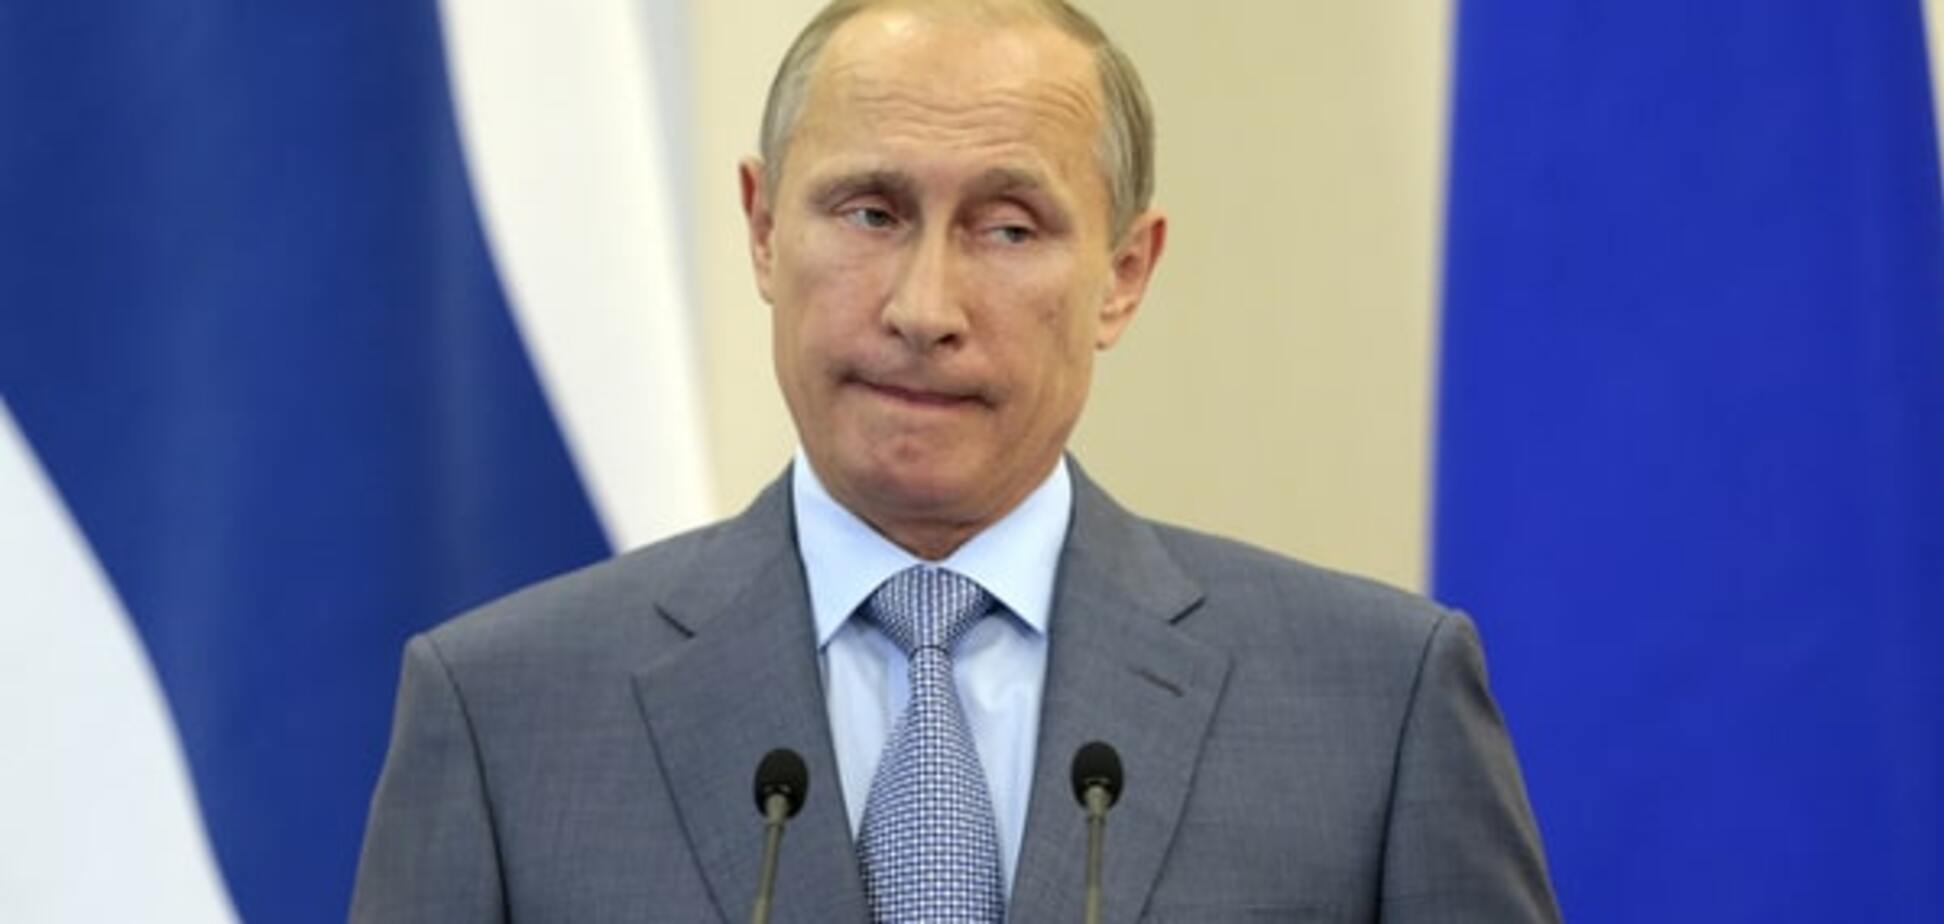 The Washington Post розкрила плани Путіна в Сирії: все більш ніж очевидно